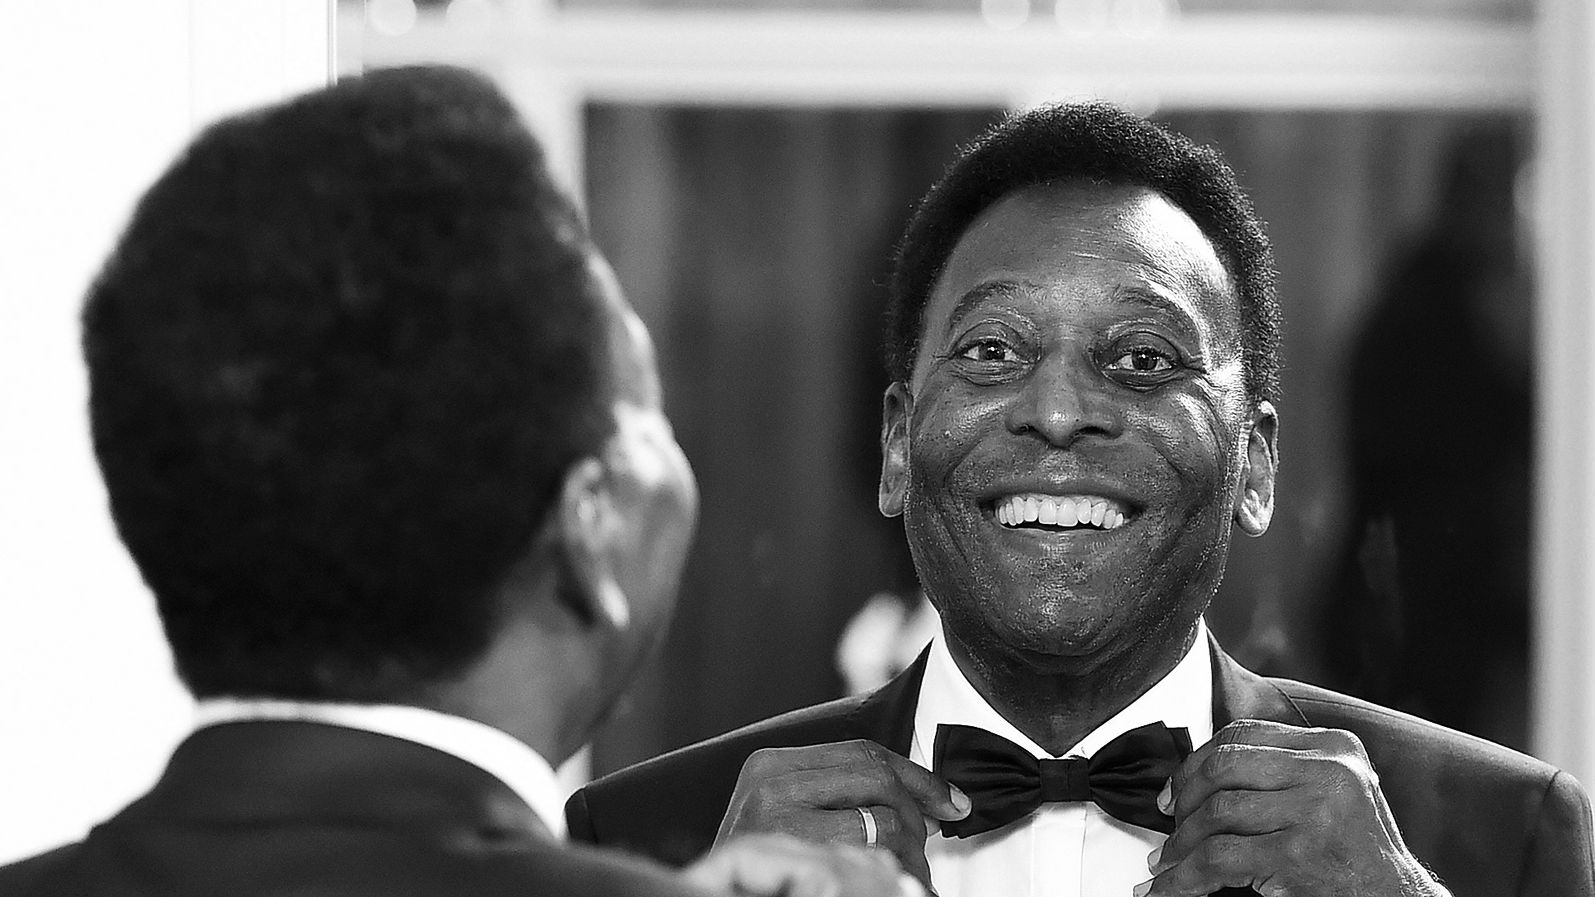 Morre Pelé, Rei do Futebol, aos 82 anos (Crédito: Getty Images)